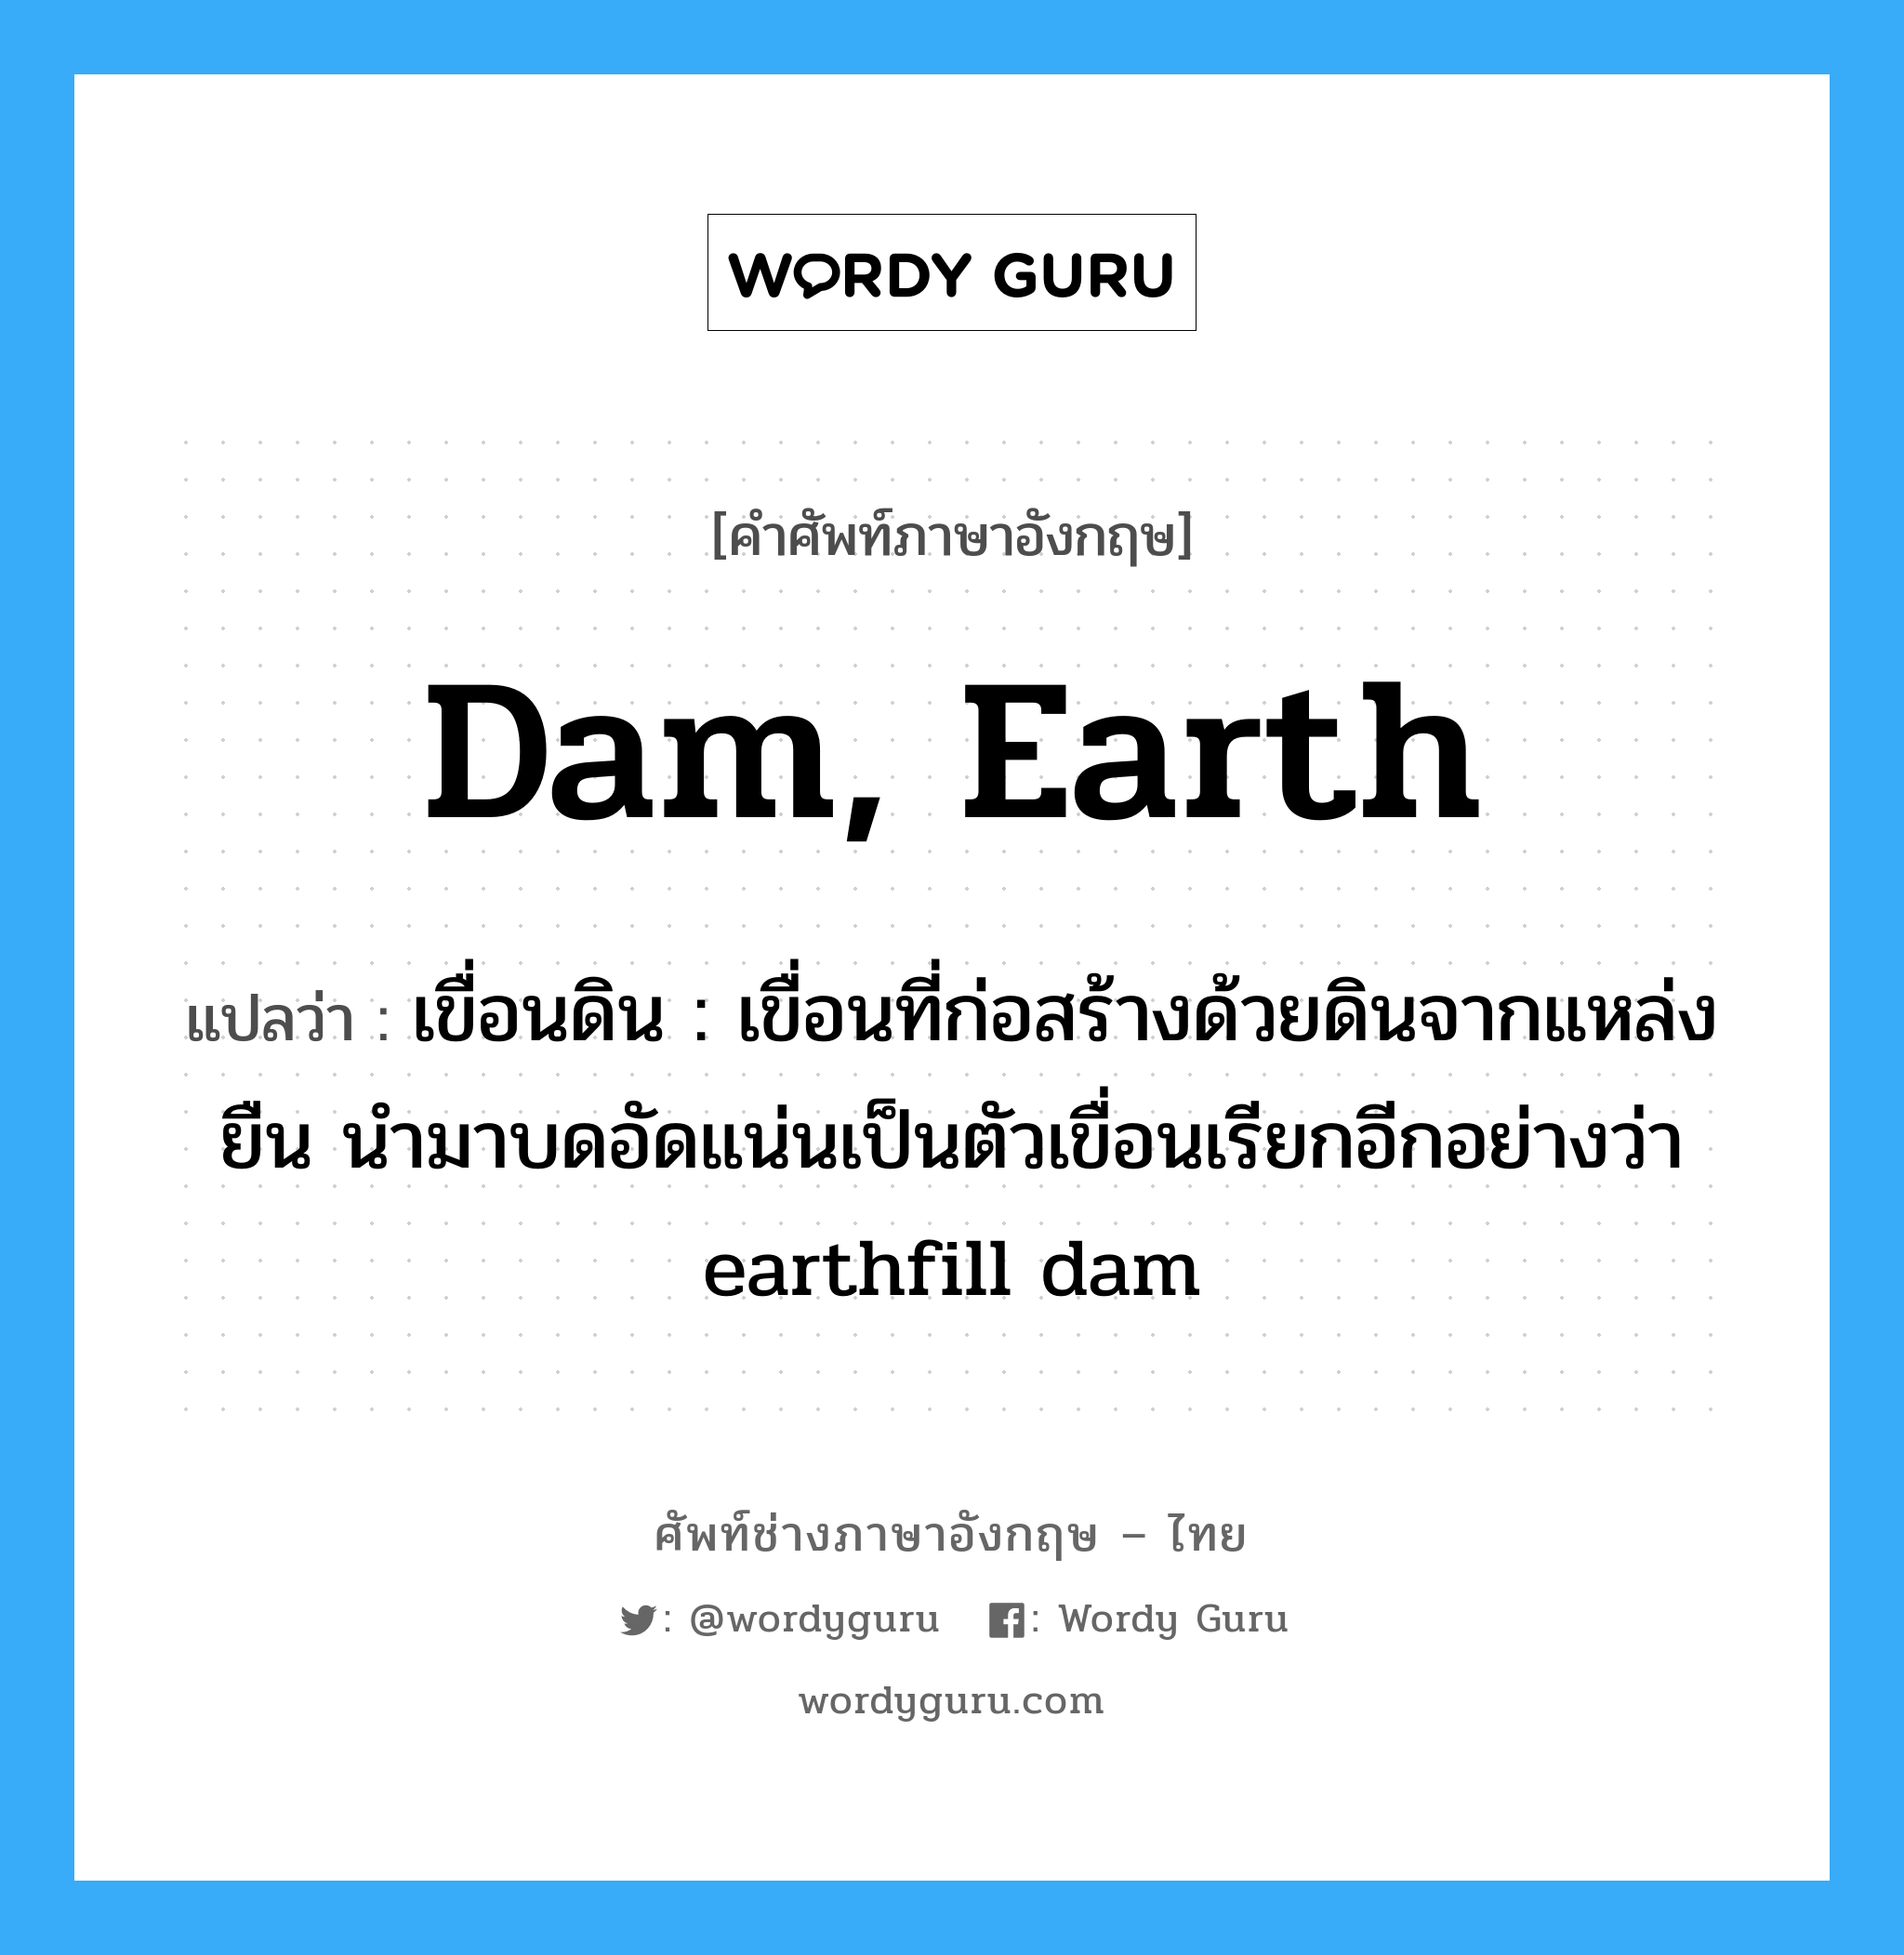 dam, earth แปลว่า?, คำศัพท์ช่างภาษาอังกฤษ - ไทย dam, earth คำศัพท์ภาษาอังกฤษ dam, earth แปลว่า เขื่อนดิน : เขื่อนที่ก่อสร้างด้วยดินจากแหล่งยืน นำมาบดอัดแน่นเป็นตัวเขื่อนเรียกอีกอย่างว่า earthfill dam